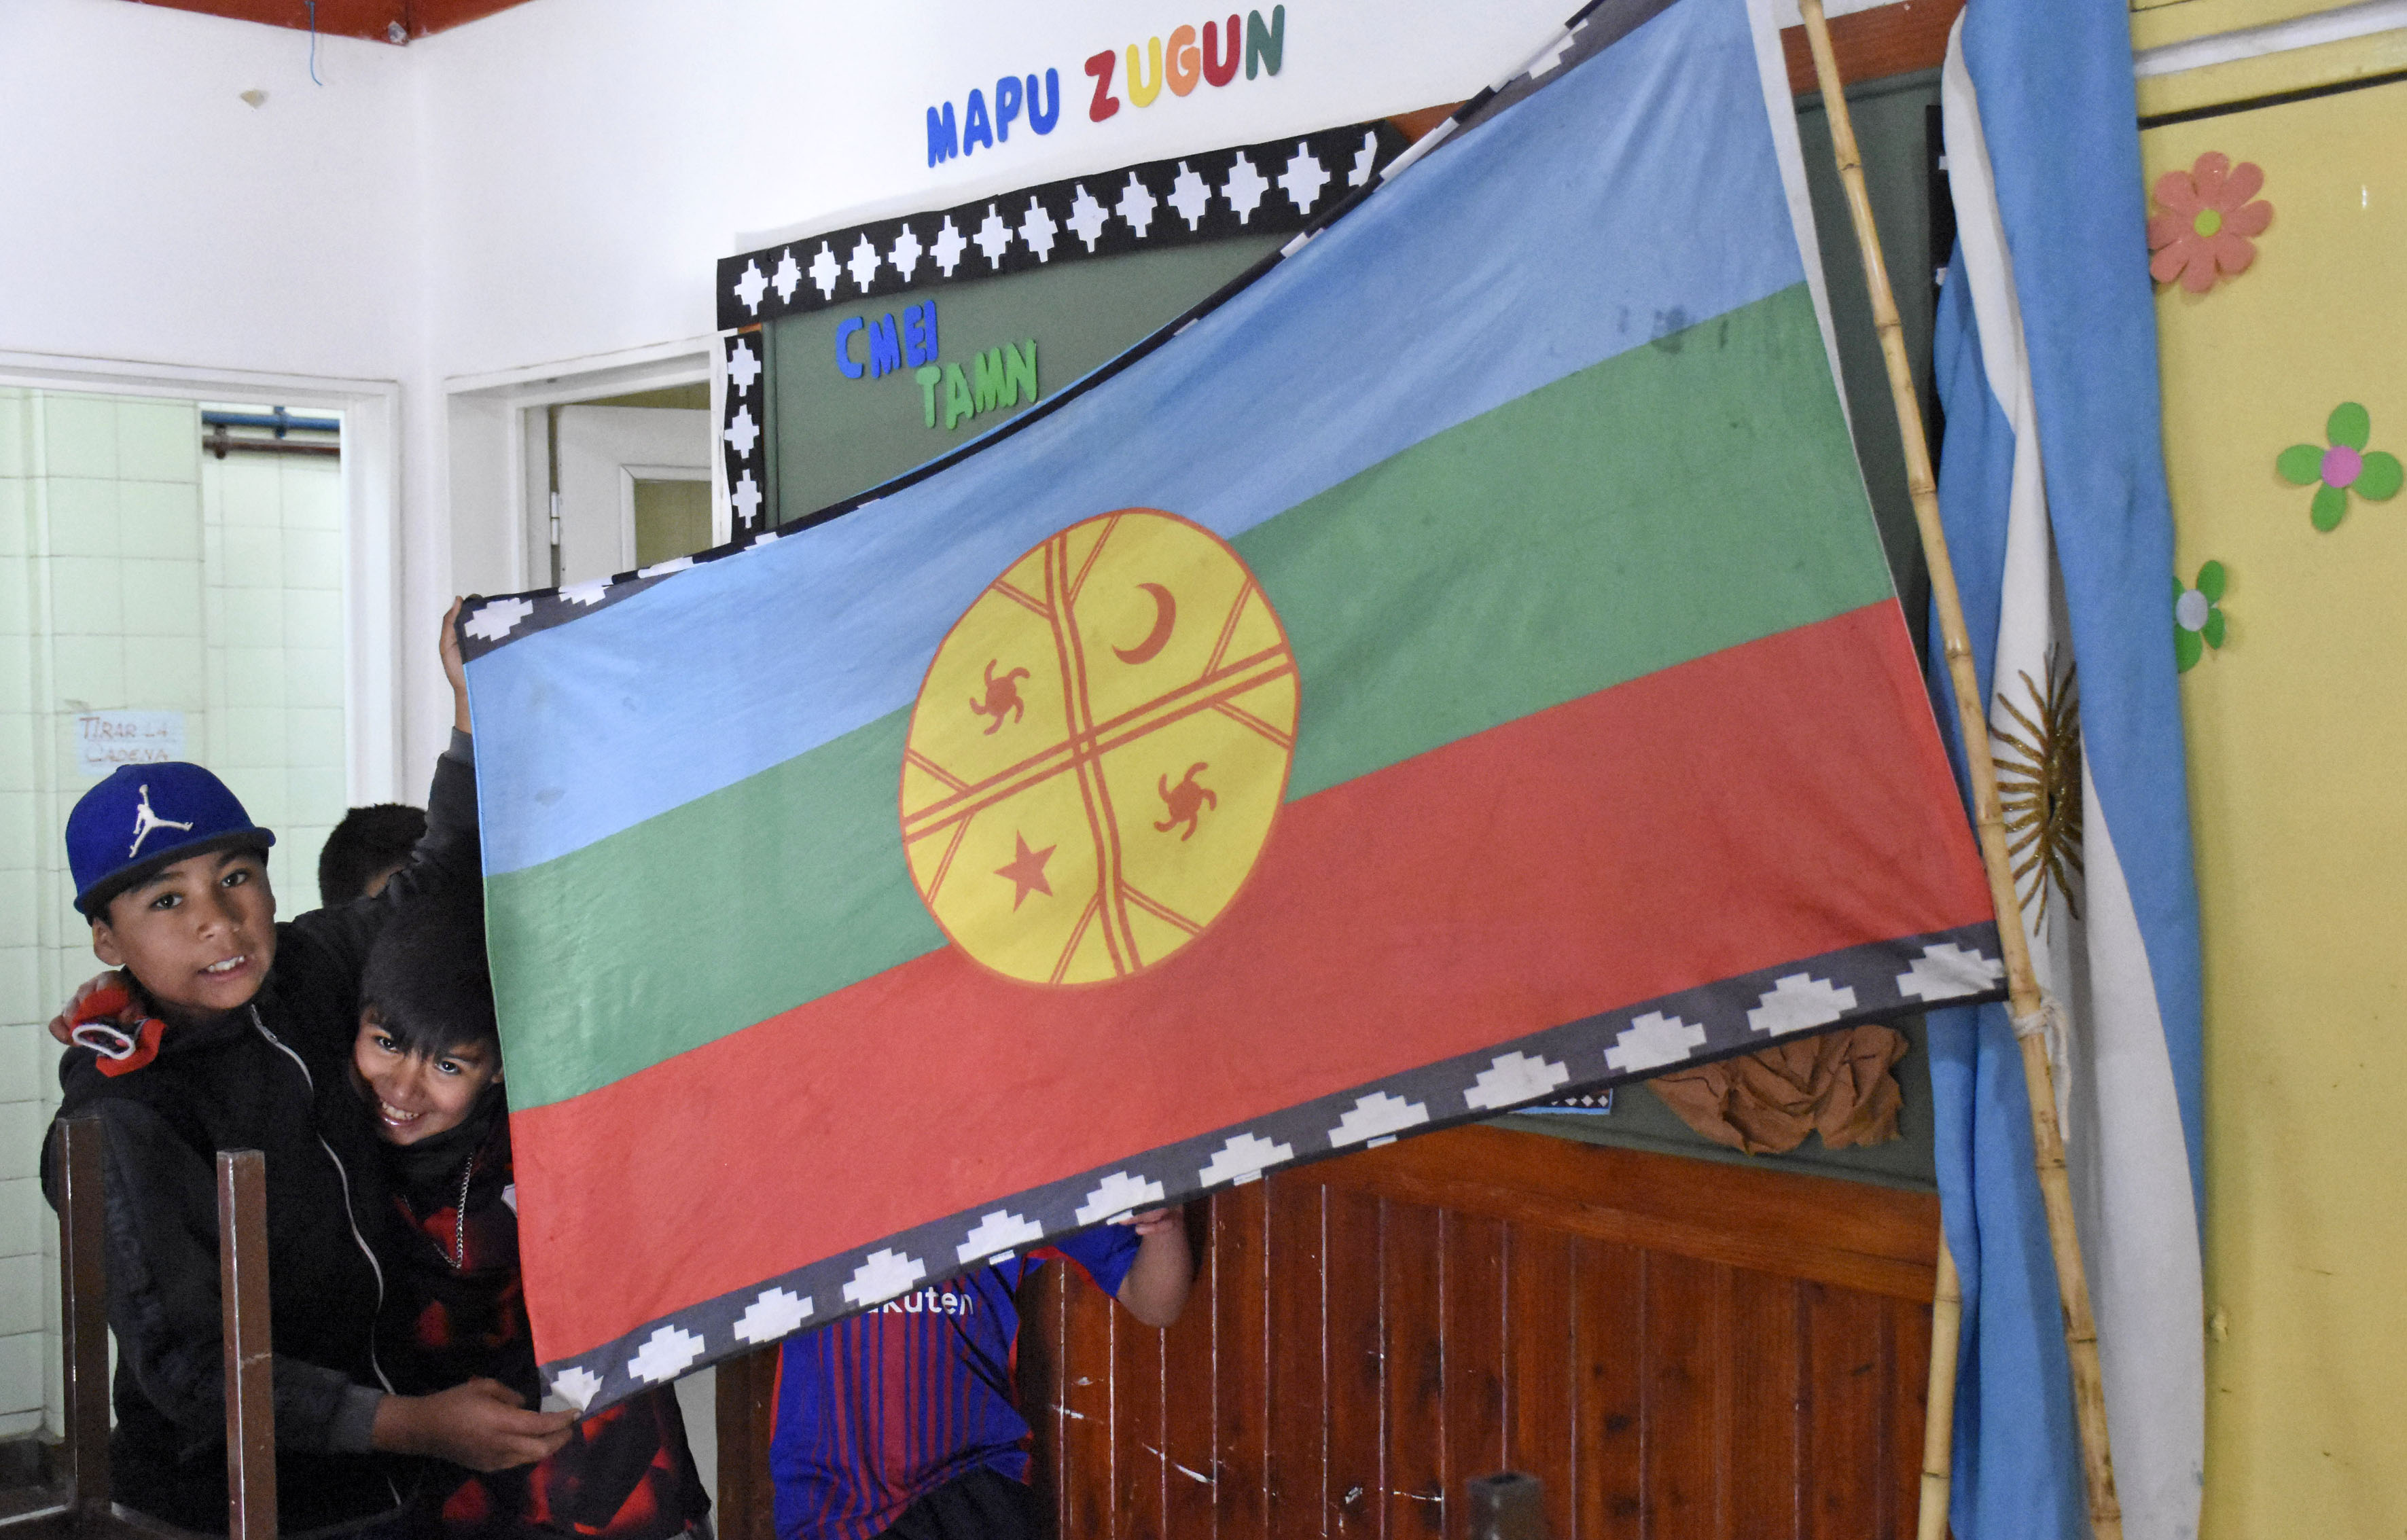 La wenufoye o bandera mapuche convive con la celeste y blanca en algunas escuelas de la región. Foto: Archivo 